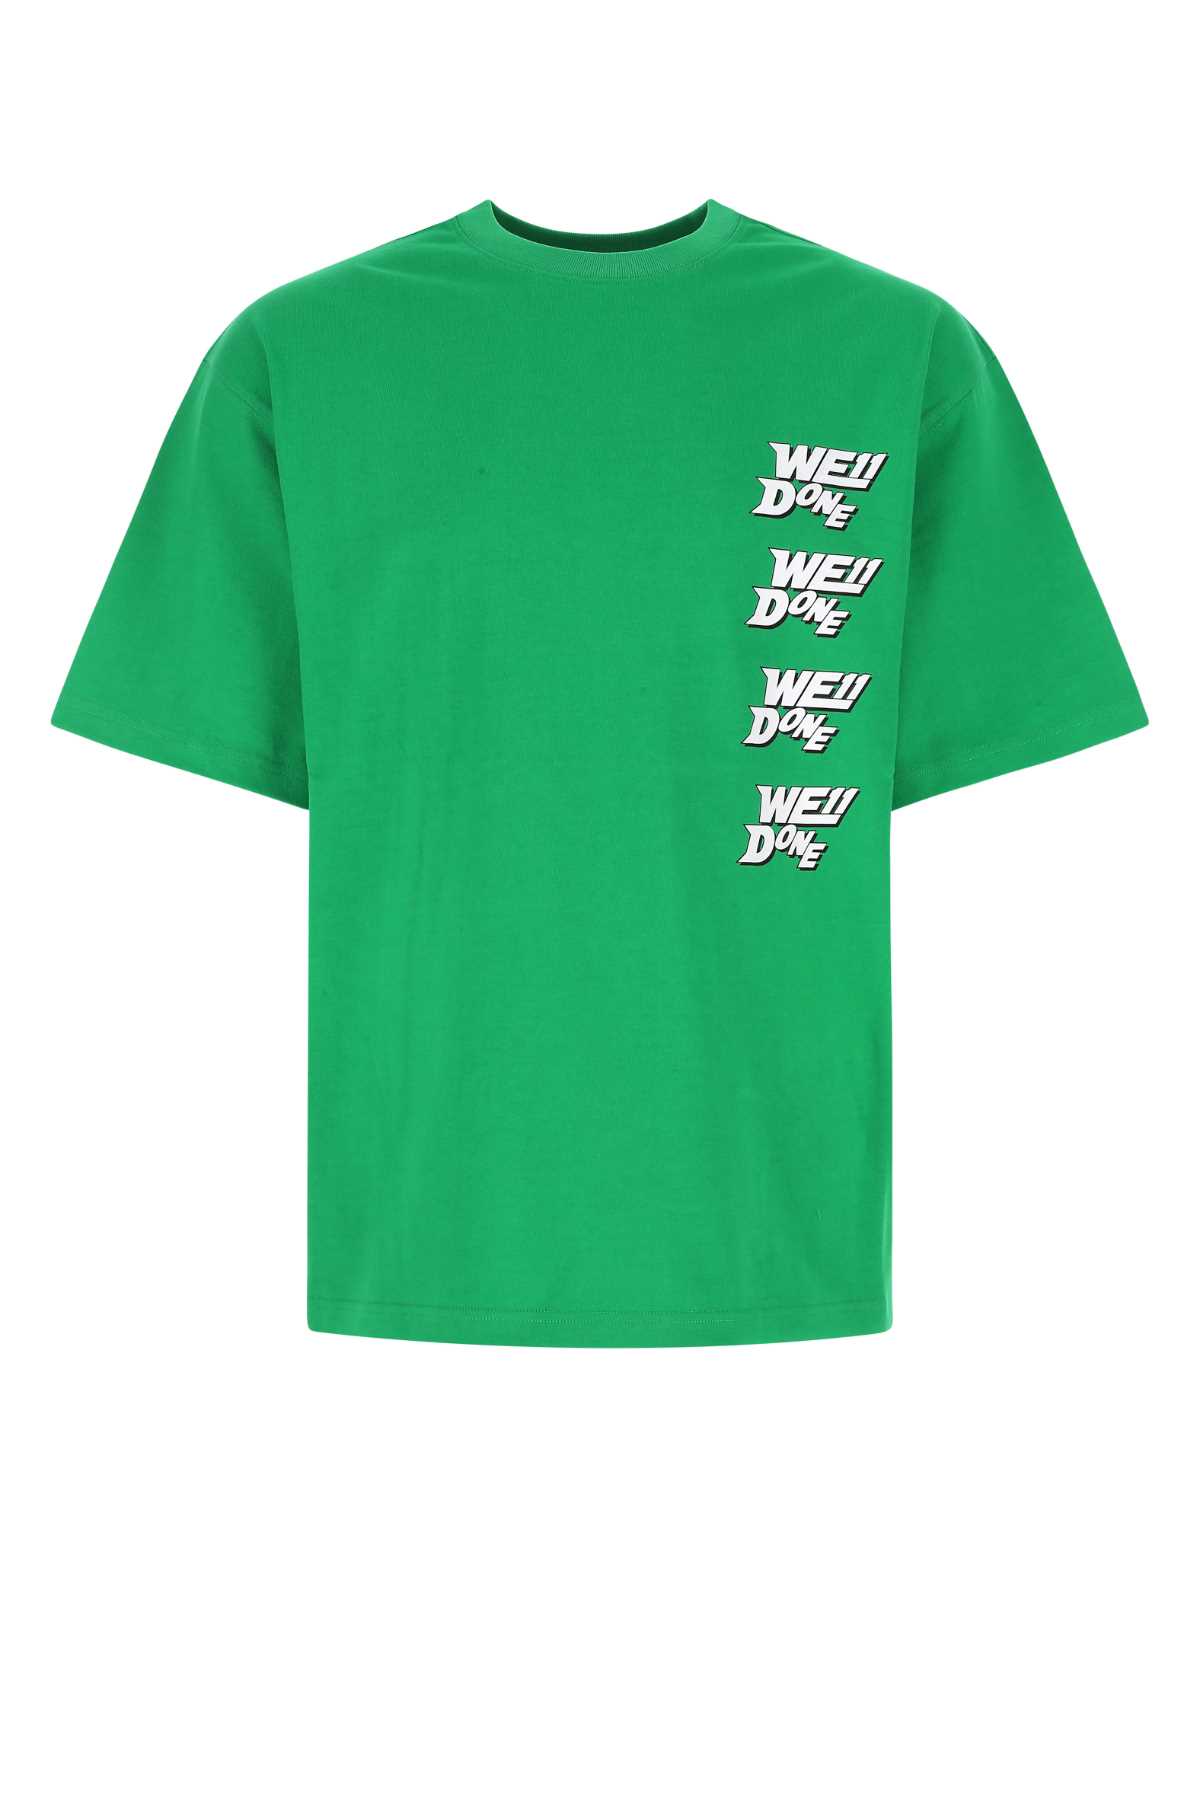 WE11 DONE Grass Green Cotton Oversize T-shirt